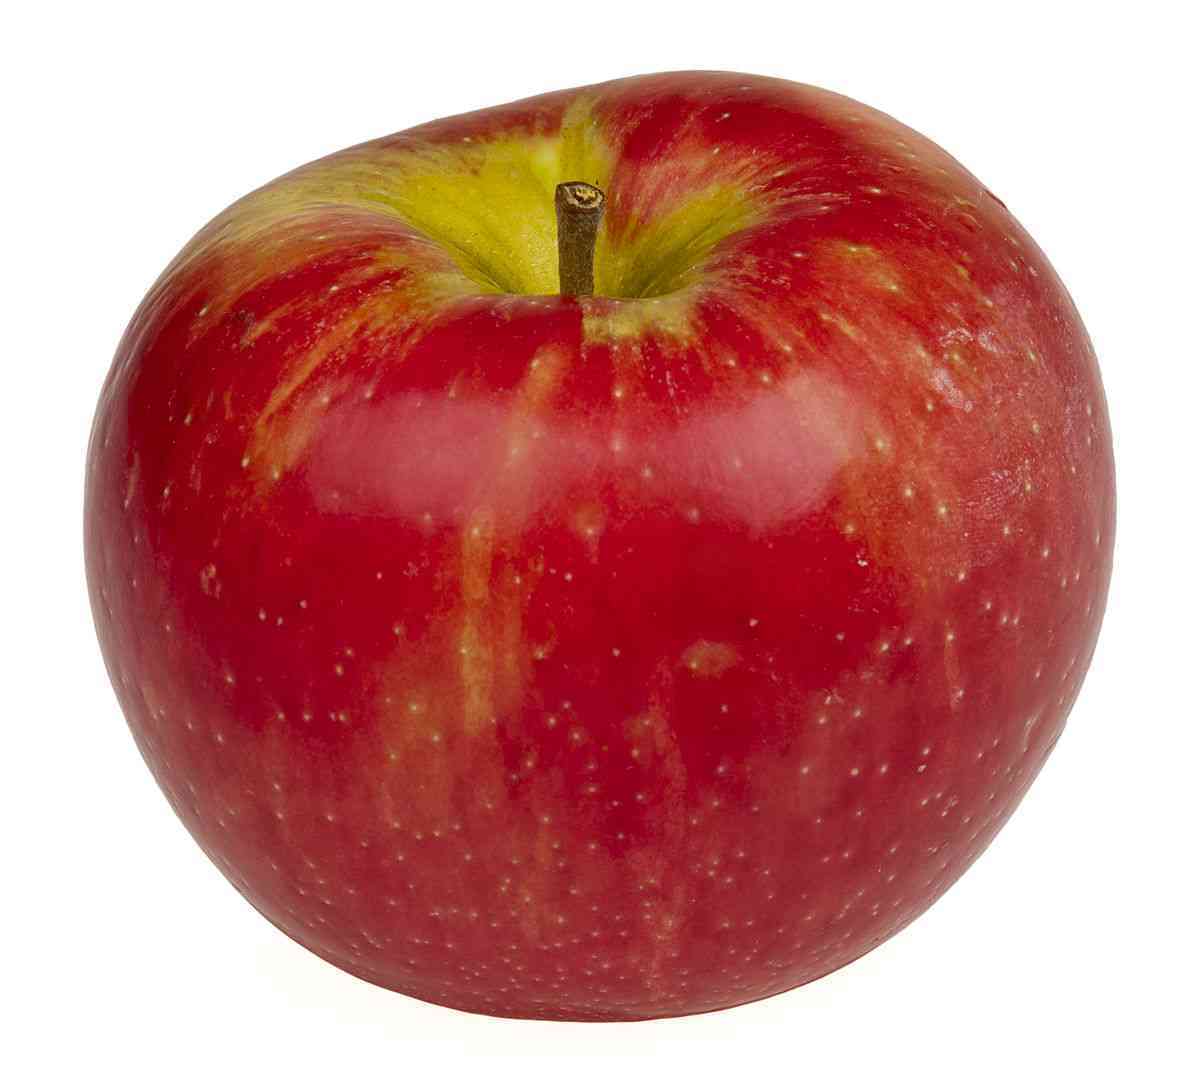 Honeycrisp Apples - Full Case Image